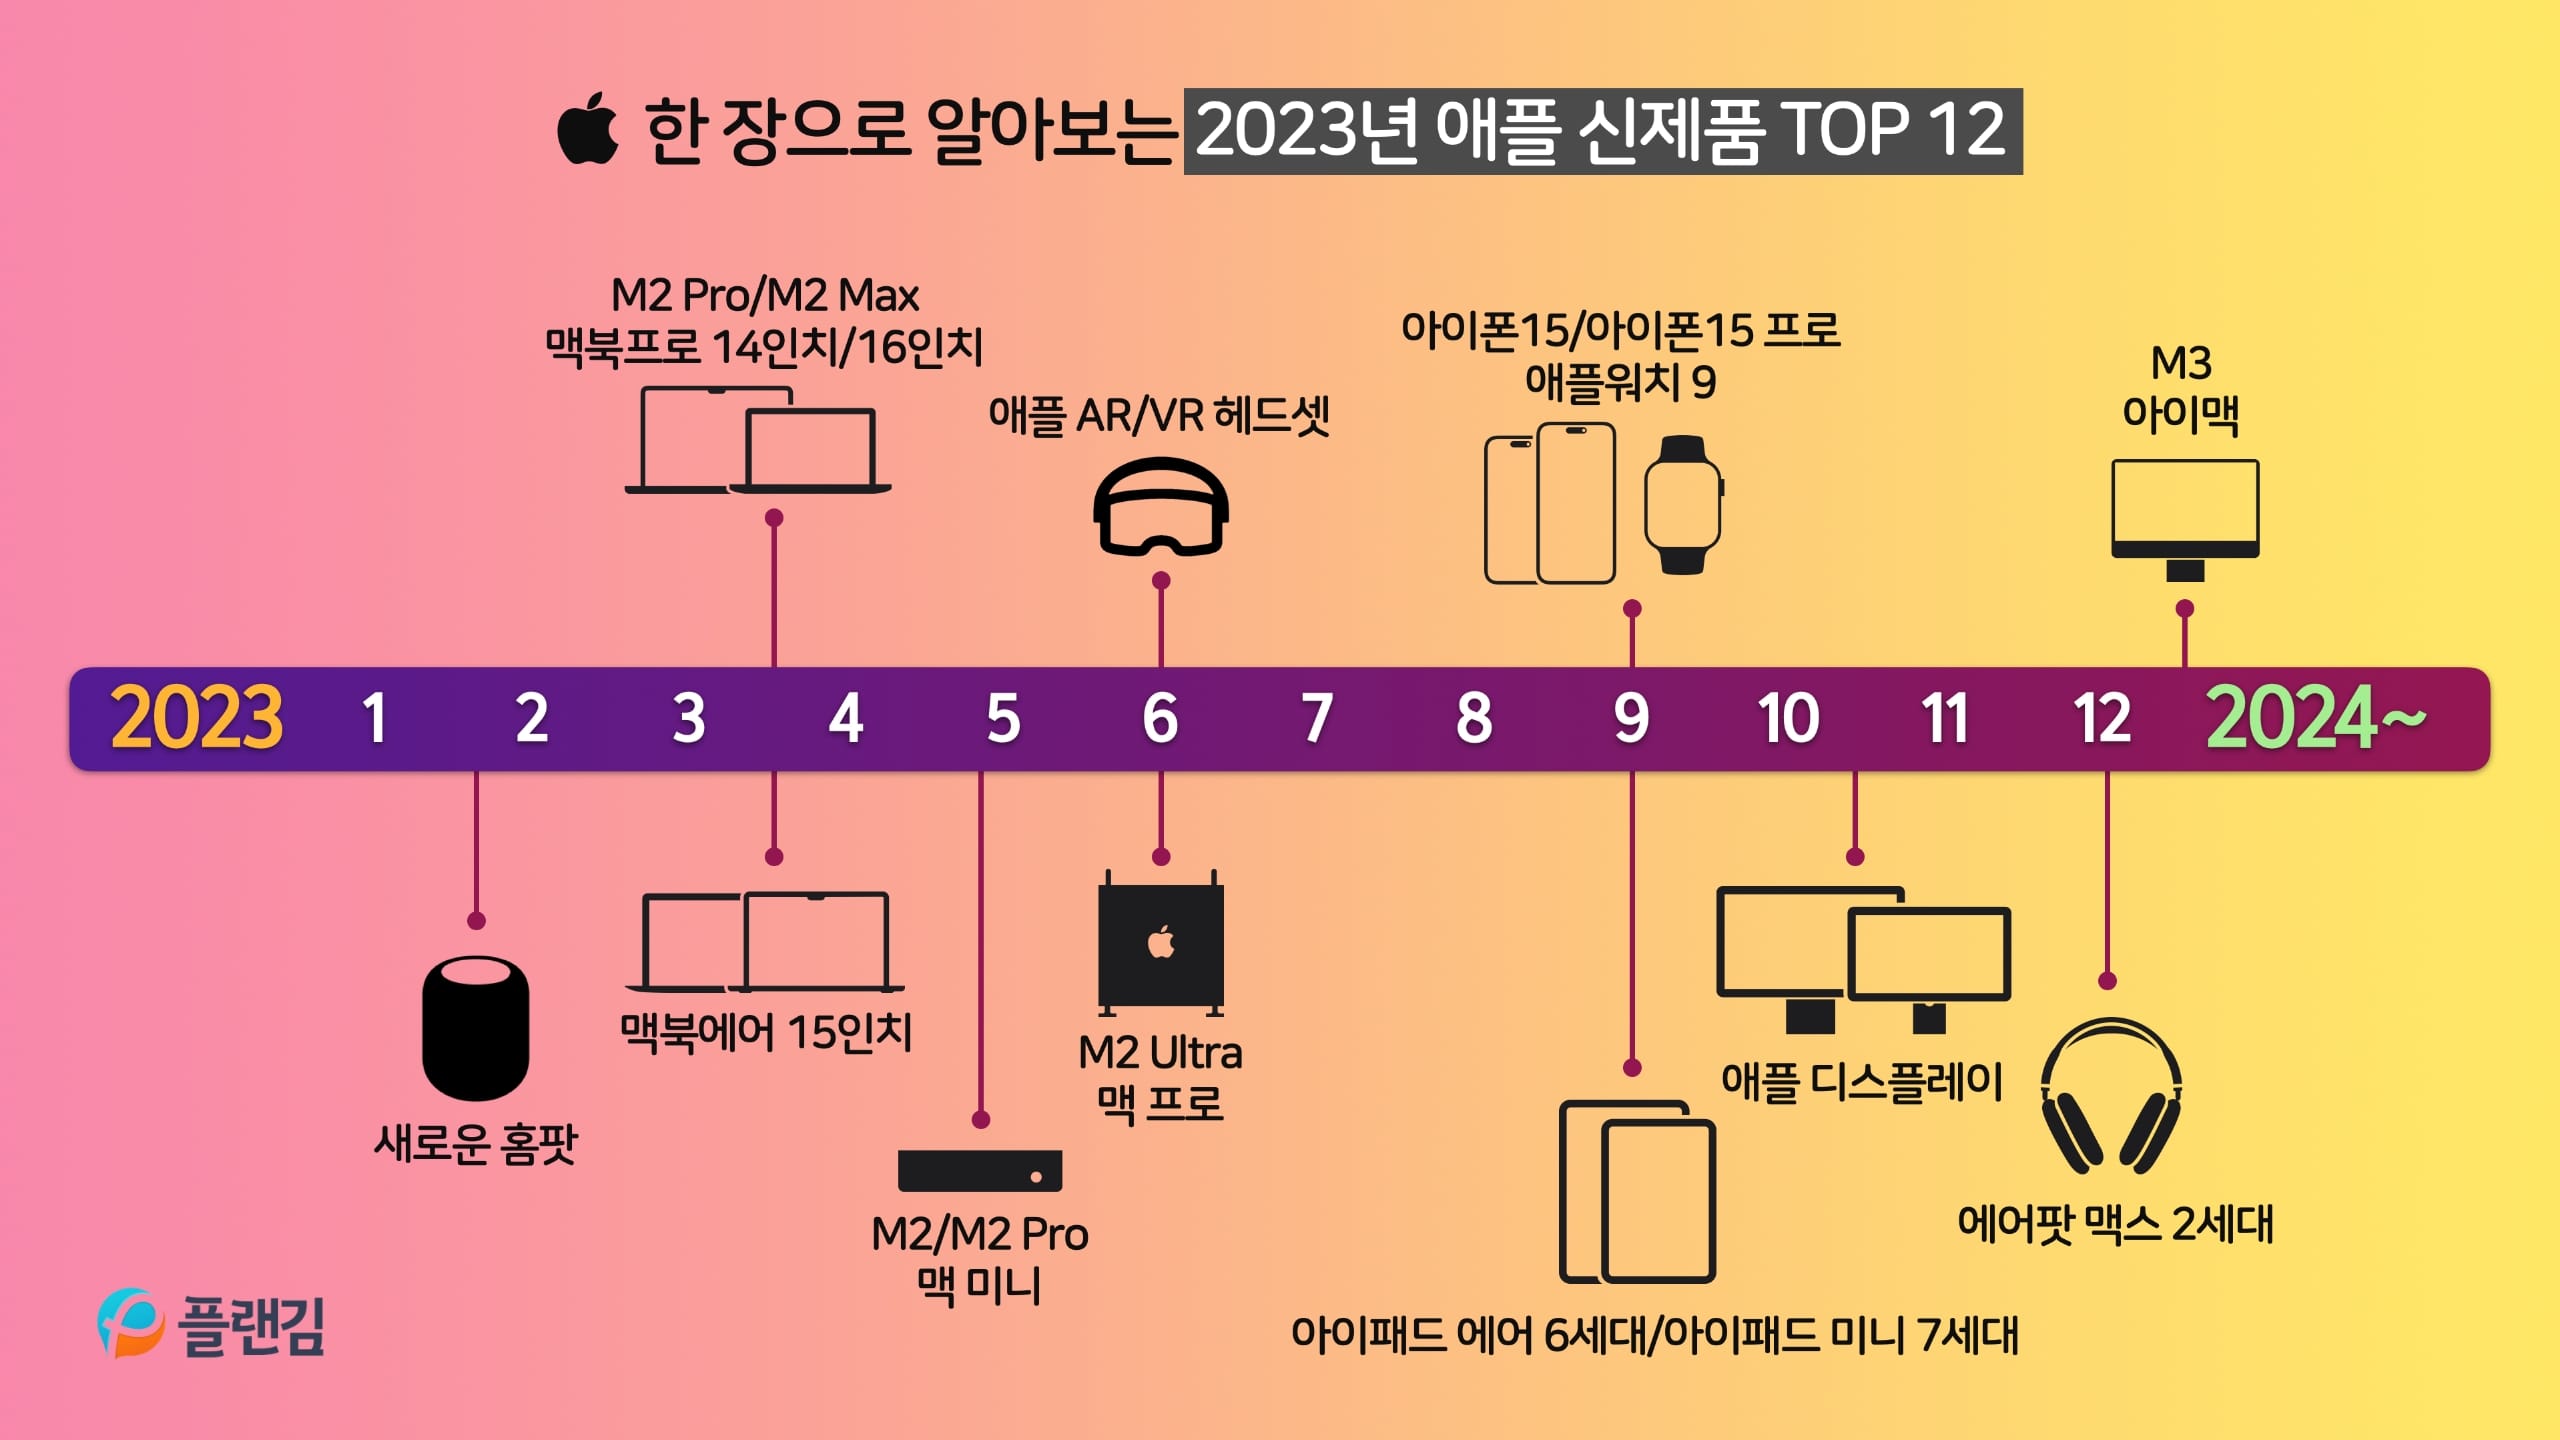 한 장으로 알아보는 2023년 애플 신제품 TOP 12